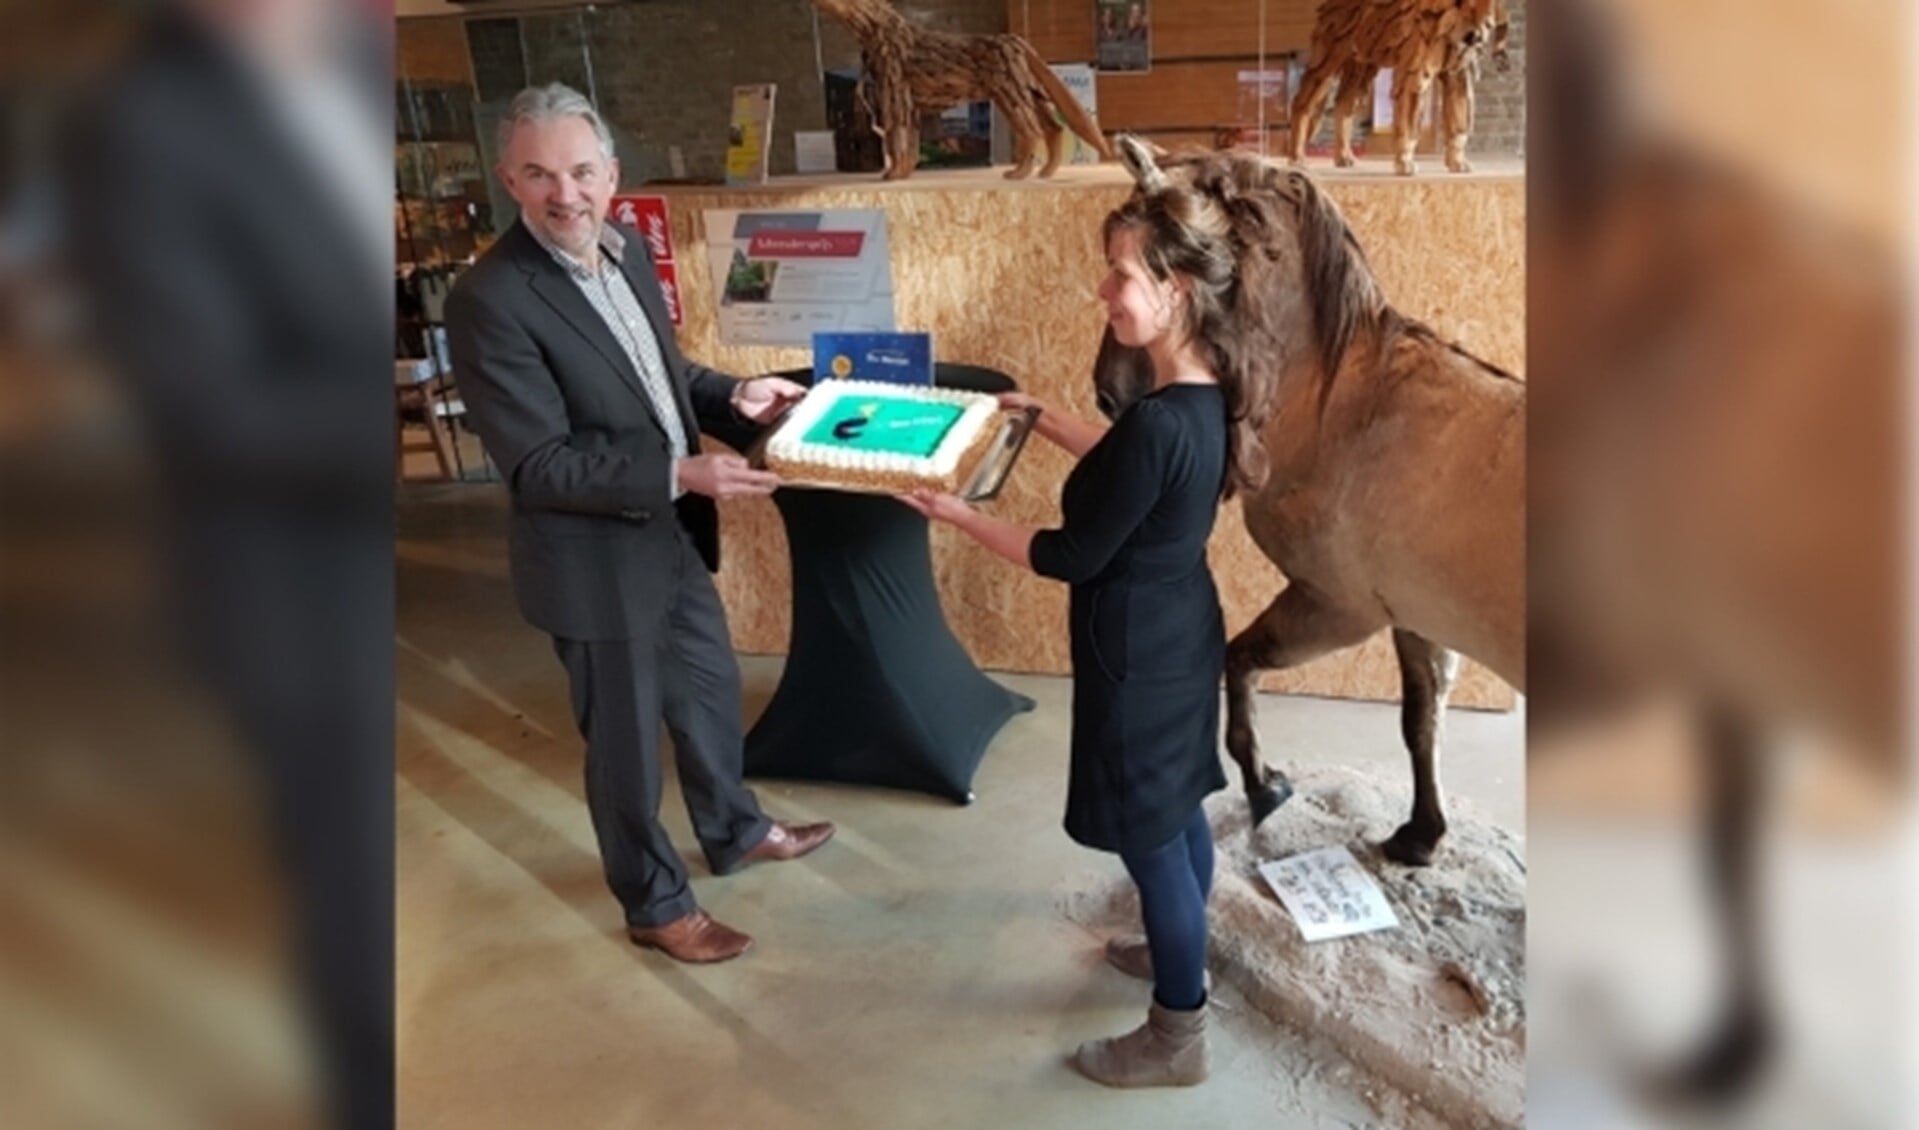 Hans Hooijmaijers, de nieuwe directeur van De Bastei, reikt een taart uit aan de baliemedewerkers, die een actieve rol hebben gespeeld in het werven van kinderen voor museuminspecties 